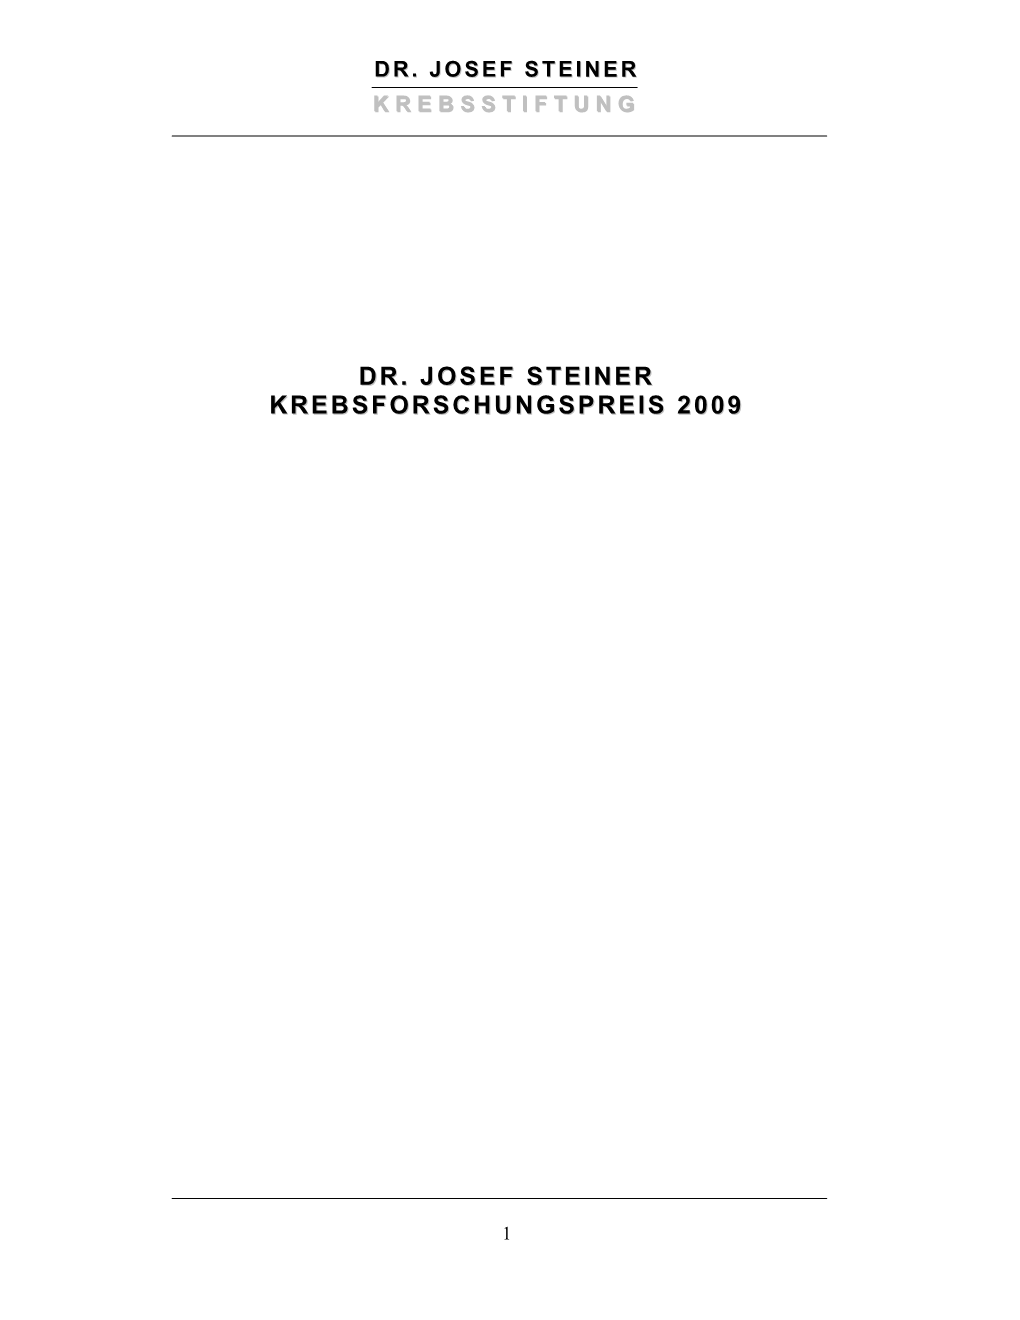 Dr. Josef Steiner Krebsforschungspreis 2009